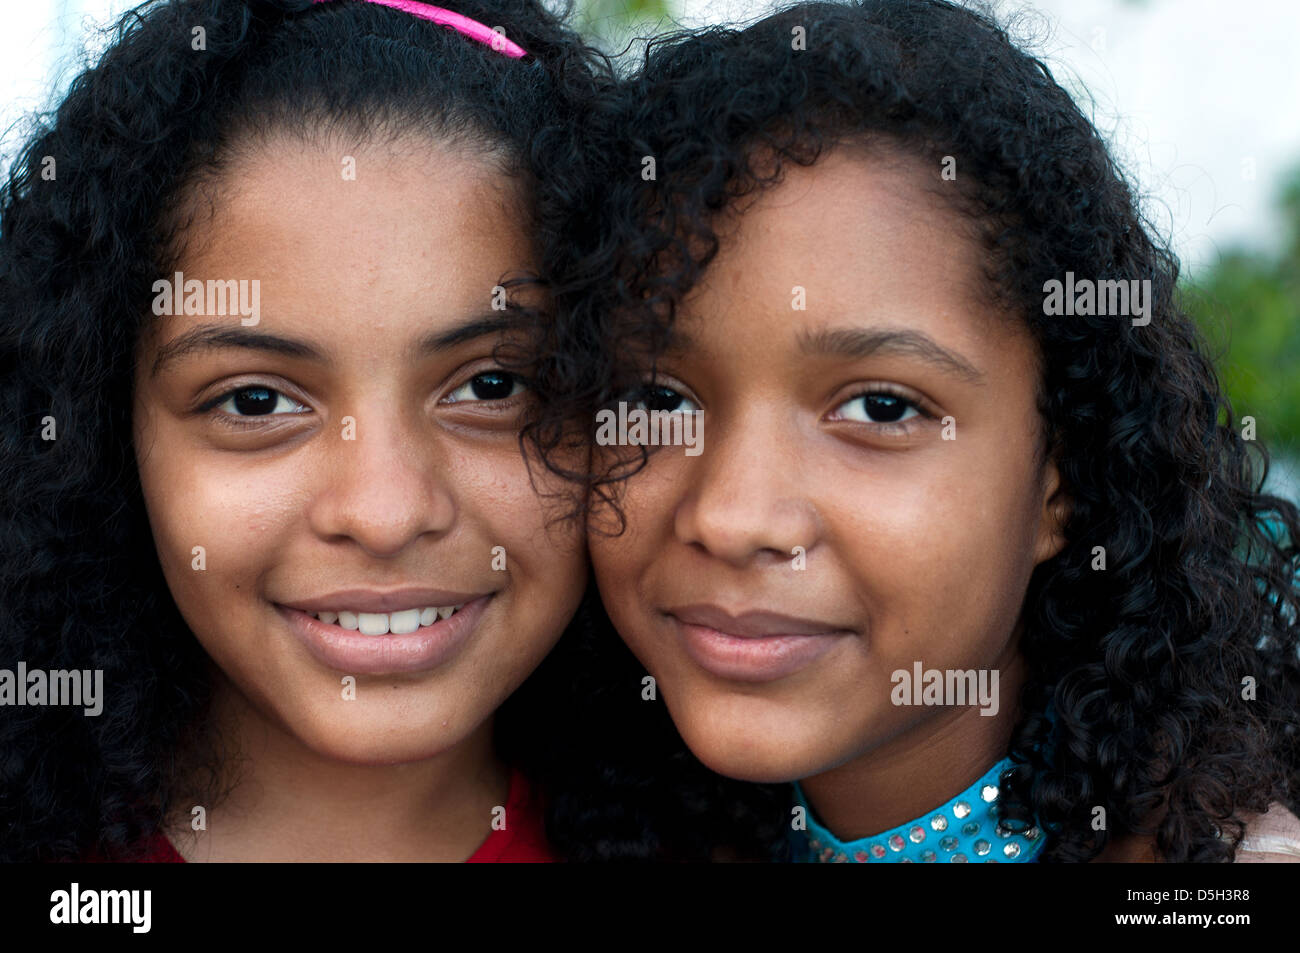 Girl photo mauritius Mauritius Girls